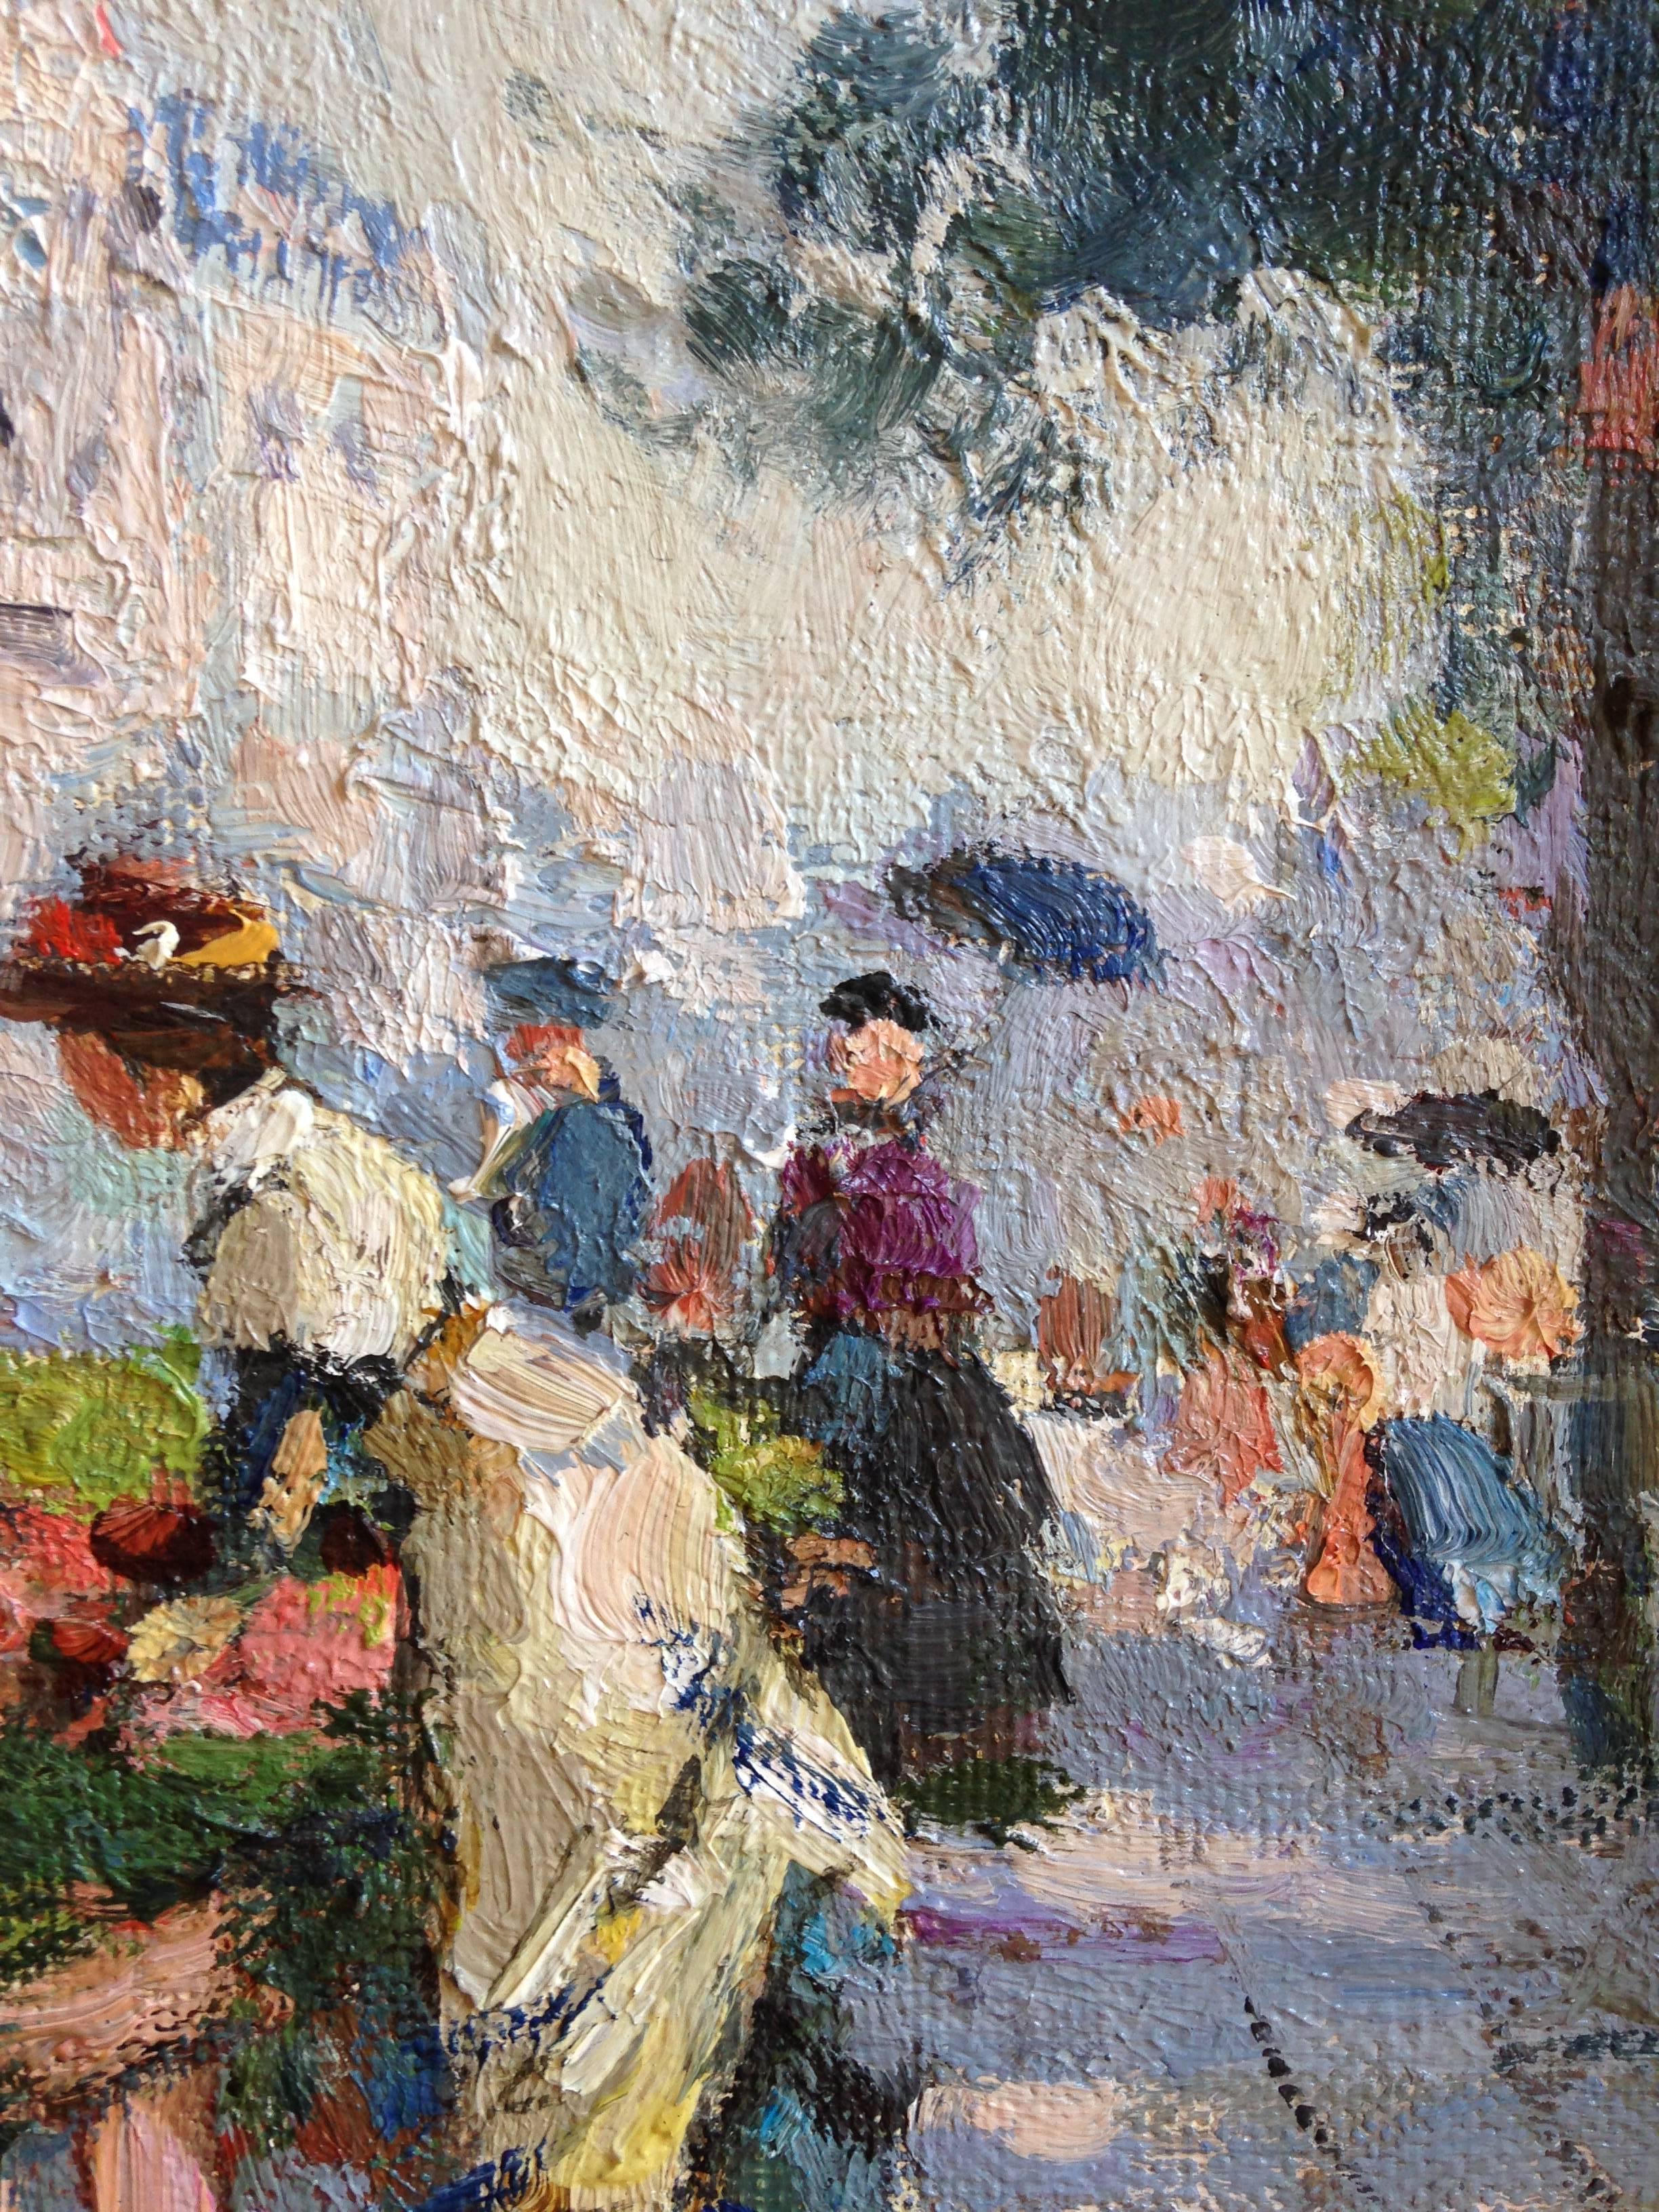 Hübsche Szene von Paris in der Art der Impressionisten.
Maße der Leinwand: 41 cm x 33 cm
Der Verkaufspreis beinhaltet den Rahmen mit einer Größe von 60 cm x 53 cm x 5 cm

Valery Sekret wurde  jahrgang 1950
Er studierte von 1967 bis 1973 Bildende